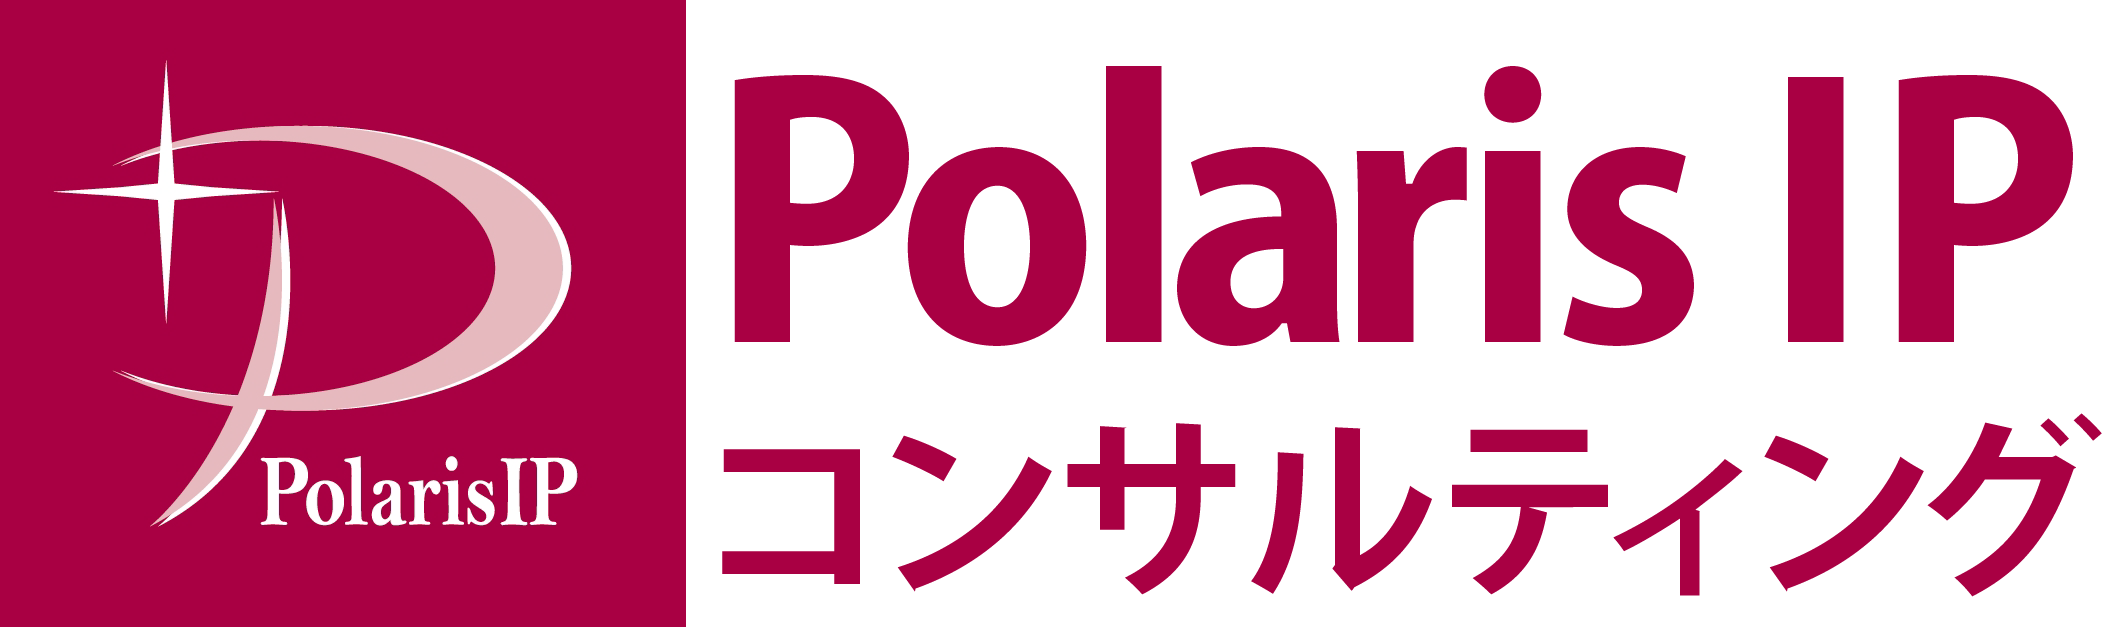 Polaris IP 컨설팅 -일본 벤처,중소기업 지원 